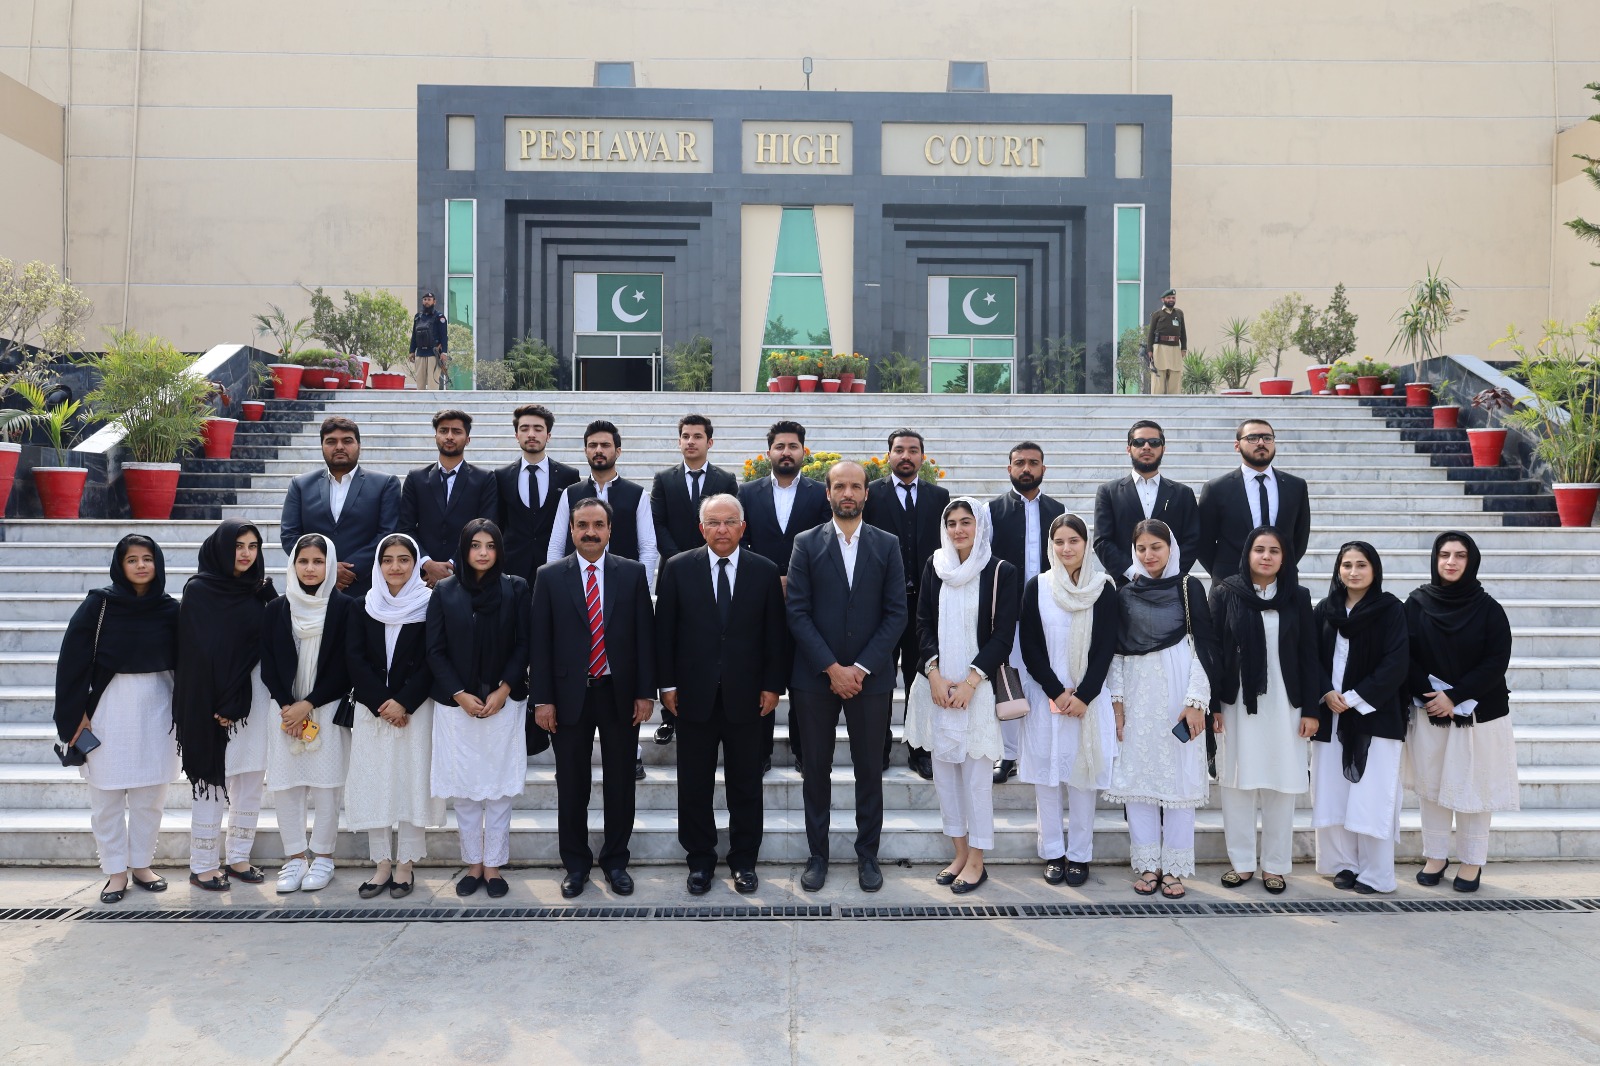 Peshawar High Court hosts Law Students’ Delegation